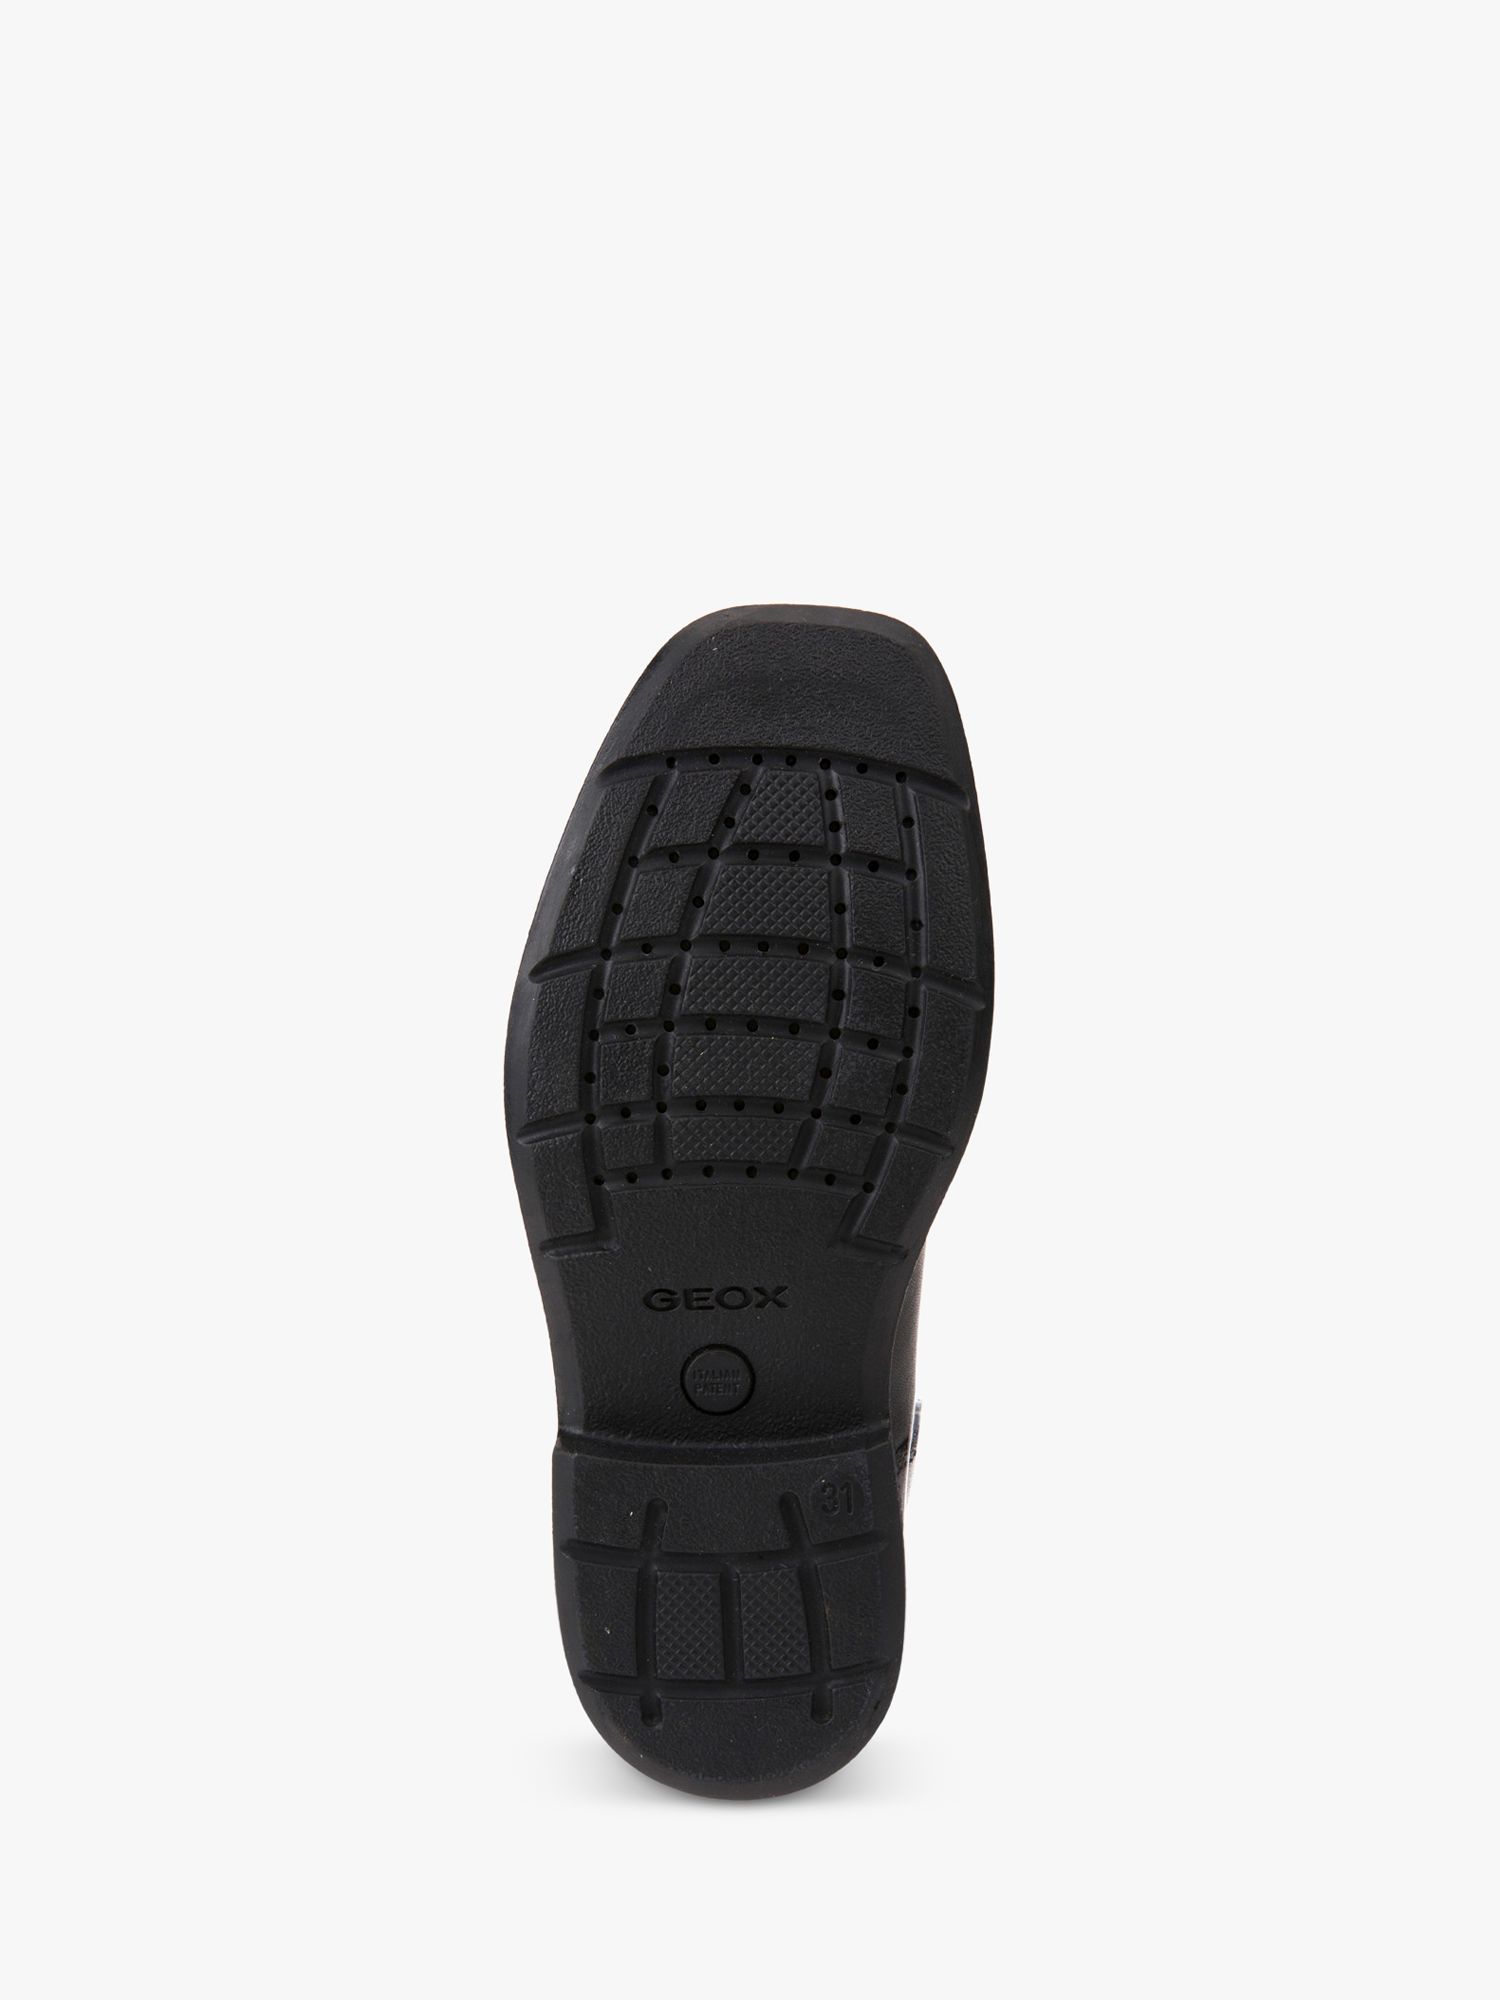 Geox Kids' J Federico Leather Lace Up School Shoes, Black, EU41